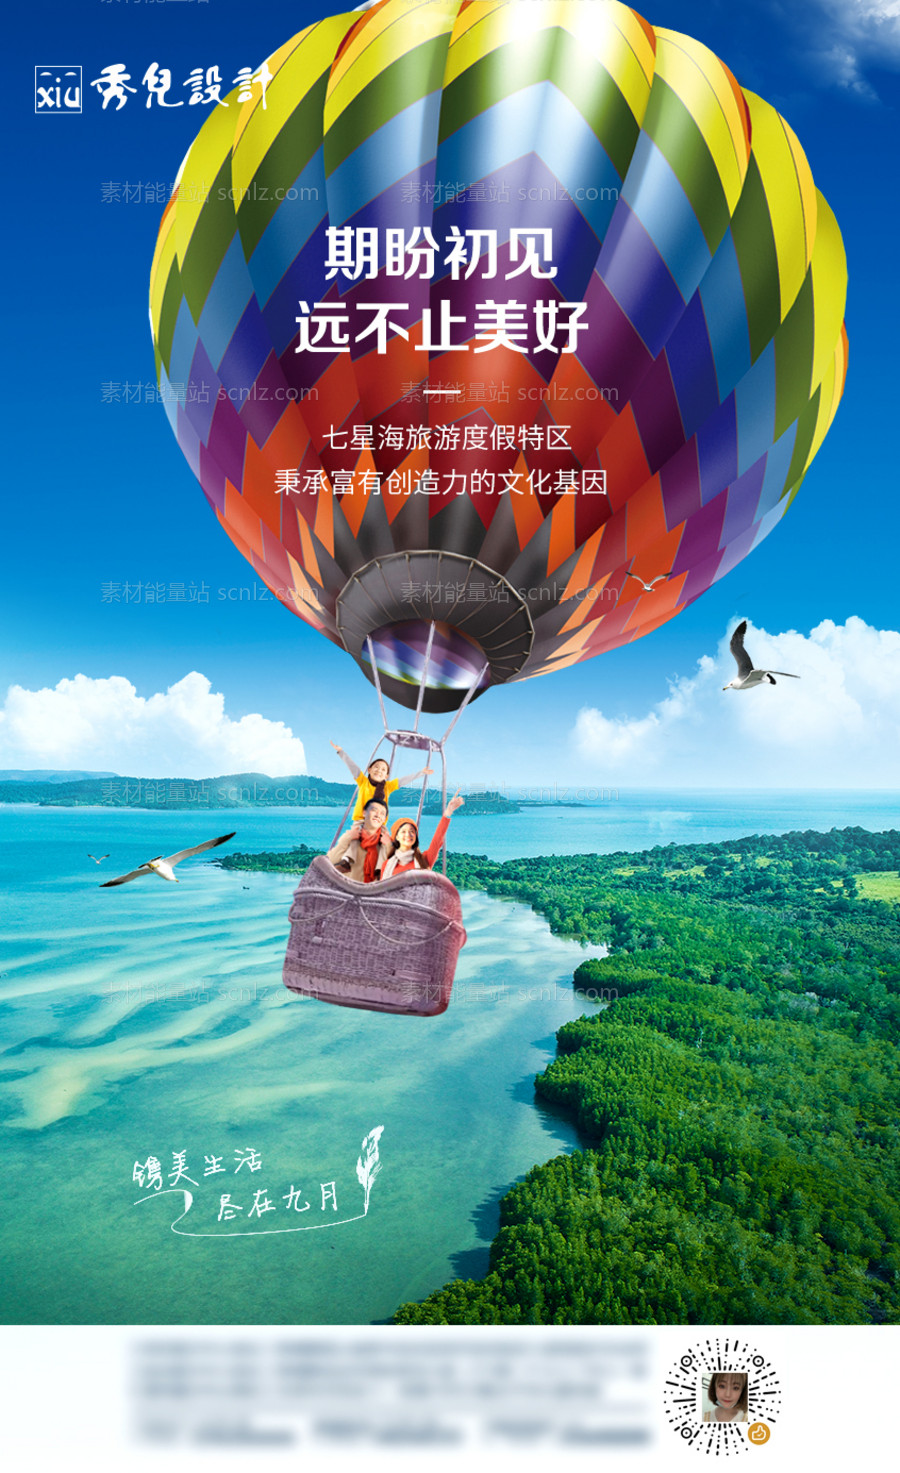 素材能量站-九月活动热气球海报